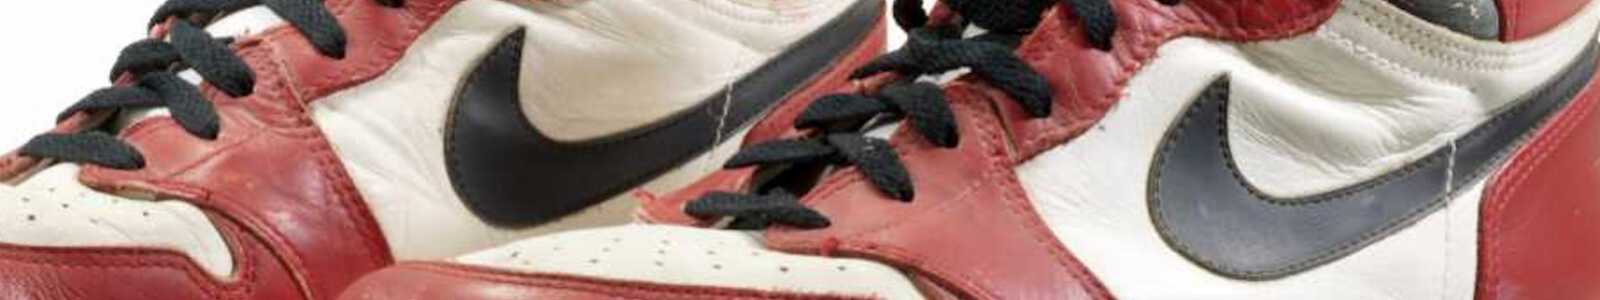 The original Air: Vom Spiel getragene und exklusive Spieler-Sneaker von Michael Jordan